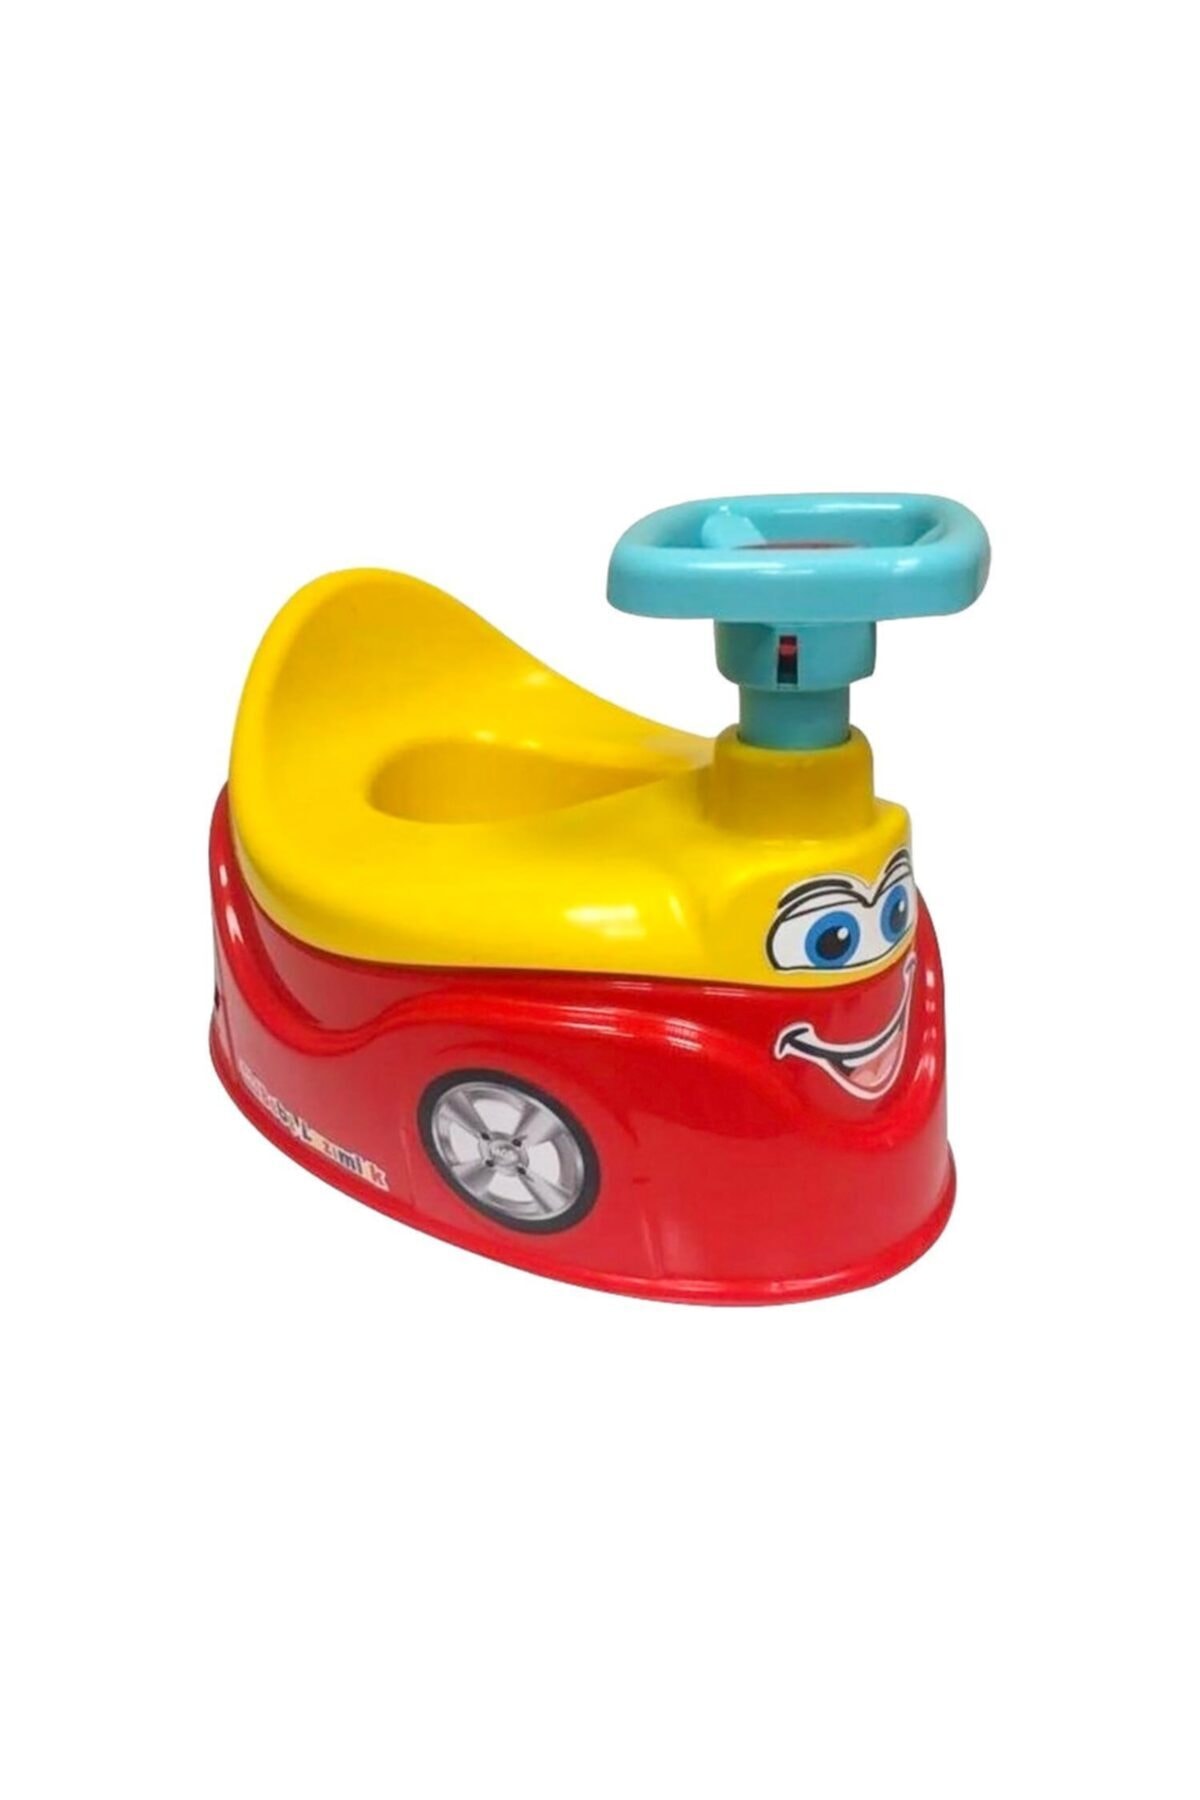 MGS OYUNCAK Mgs Araba Lazımlık Tuvalet Eğitimi Için Oyuncaklı Lazımlık Oturak - Kırmızı ZO10389